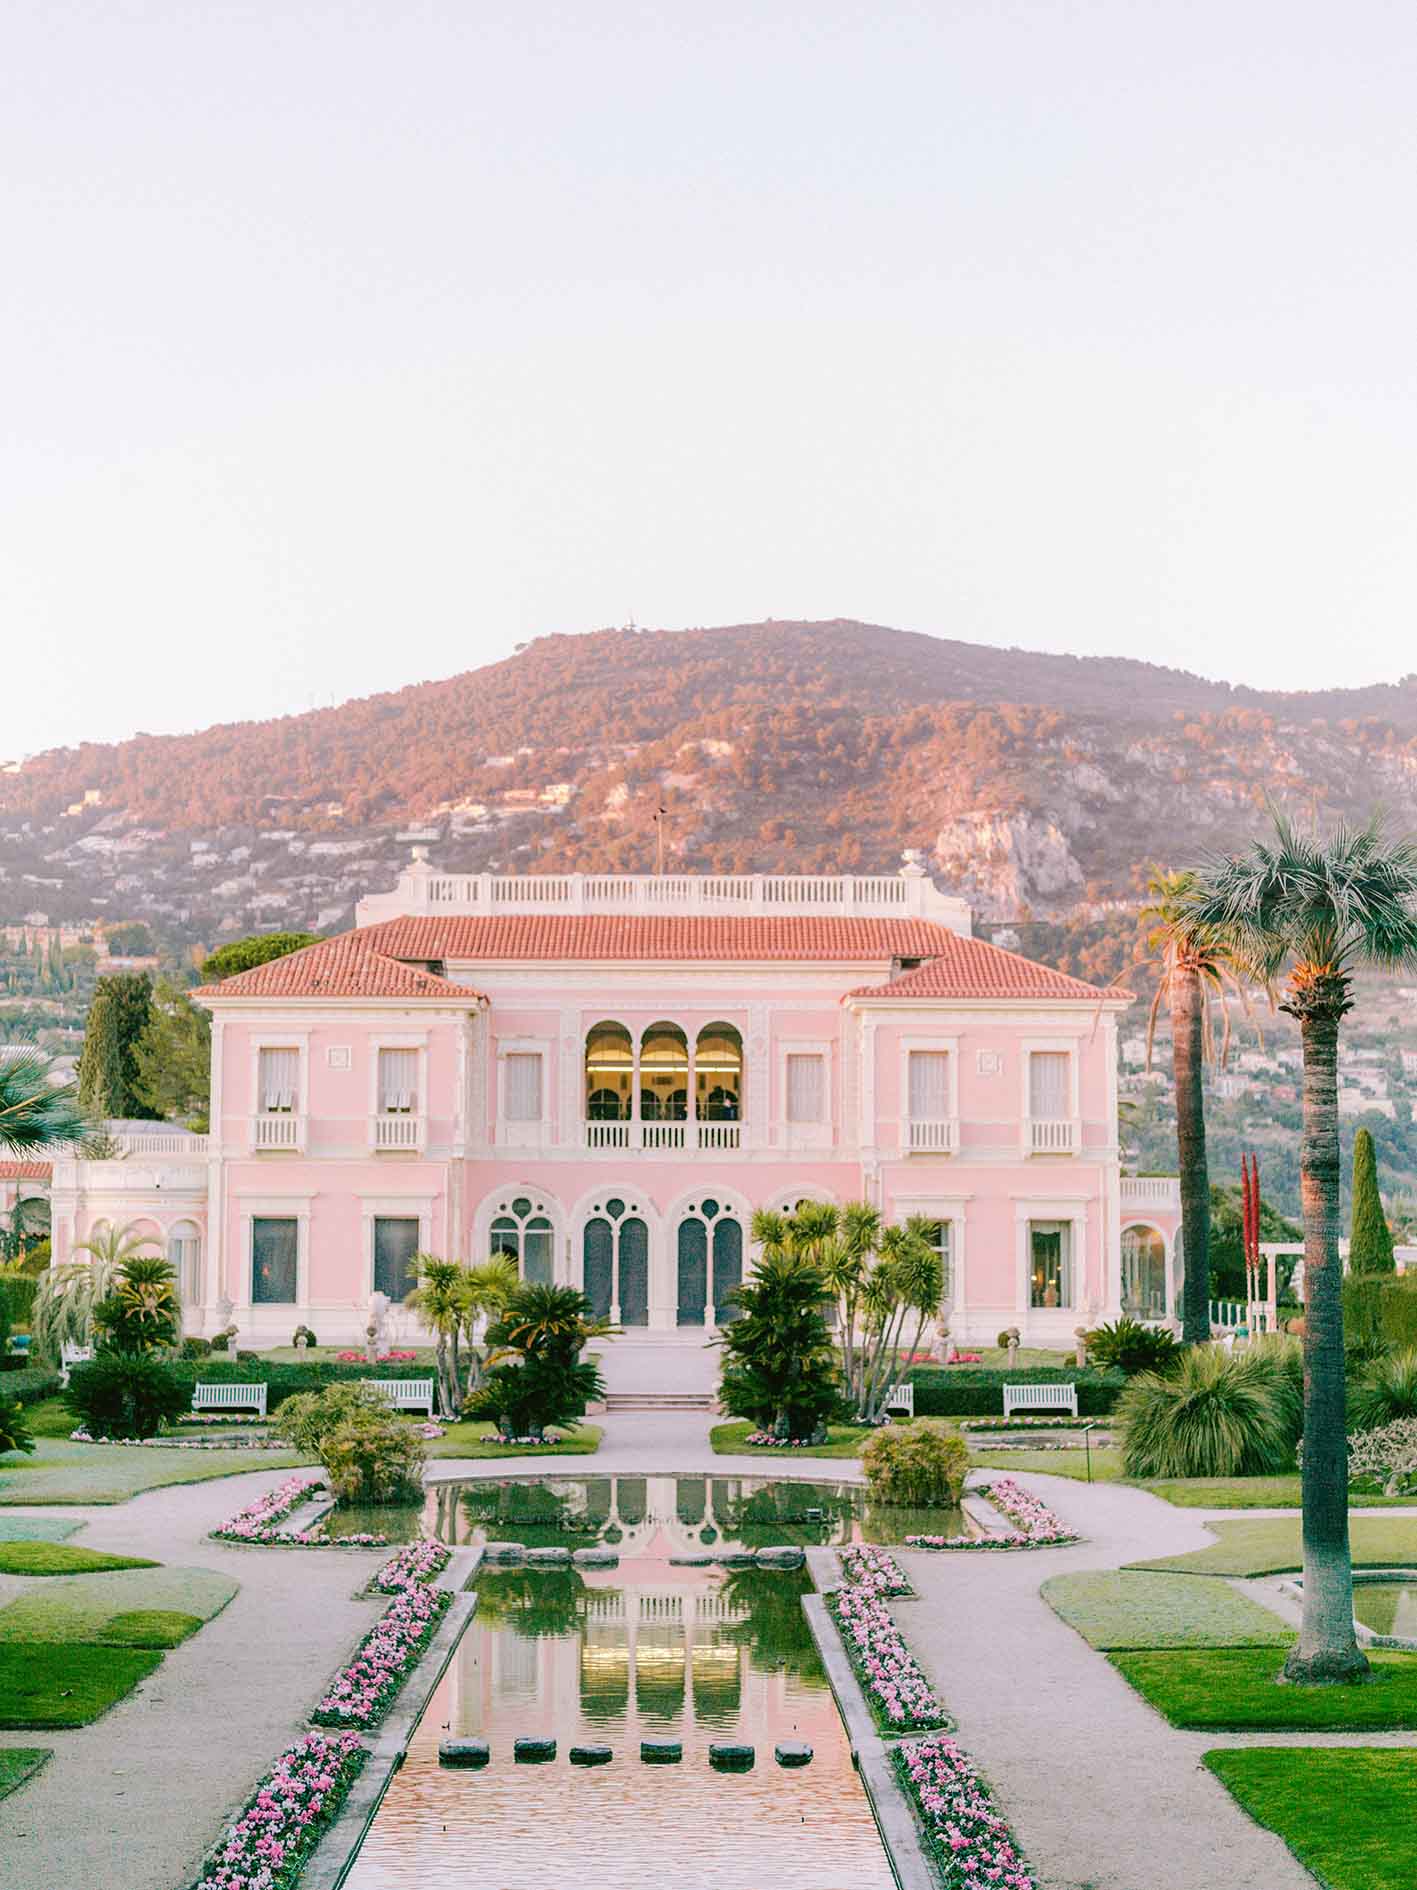 La villa Ephrussi de rotschild et ses jardin. On voit aussi la cascade